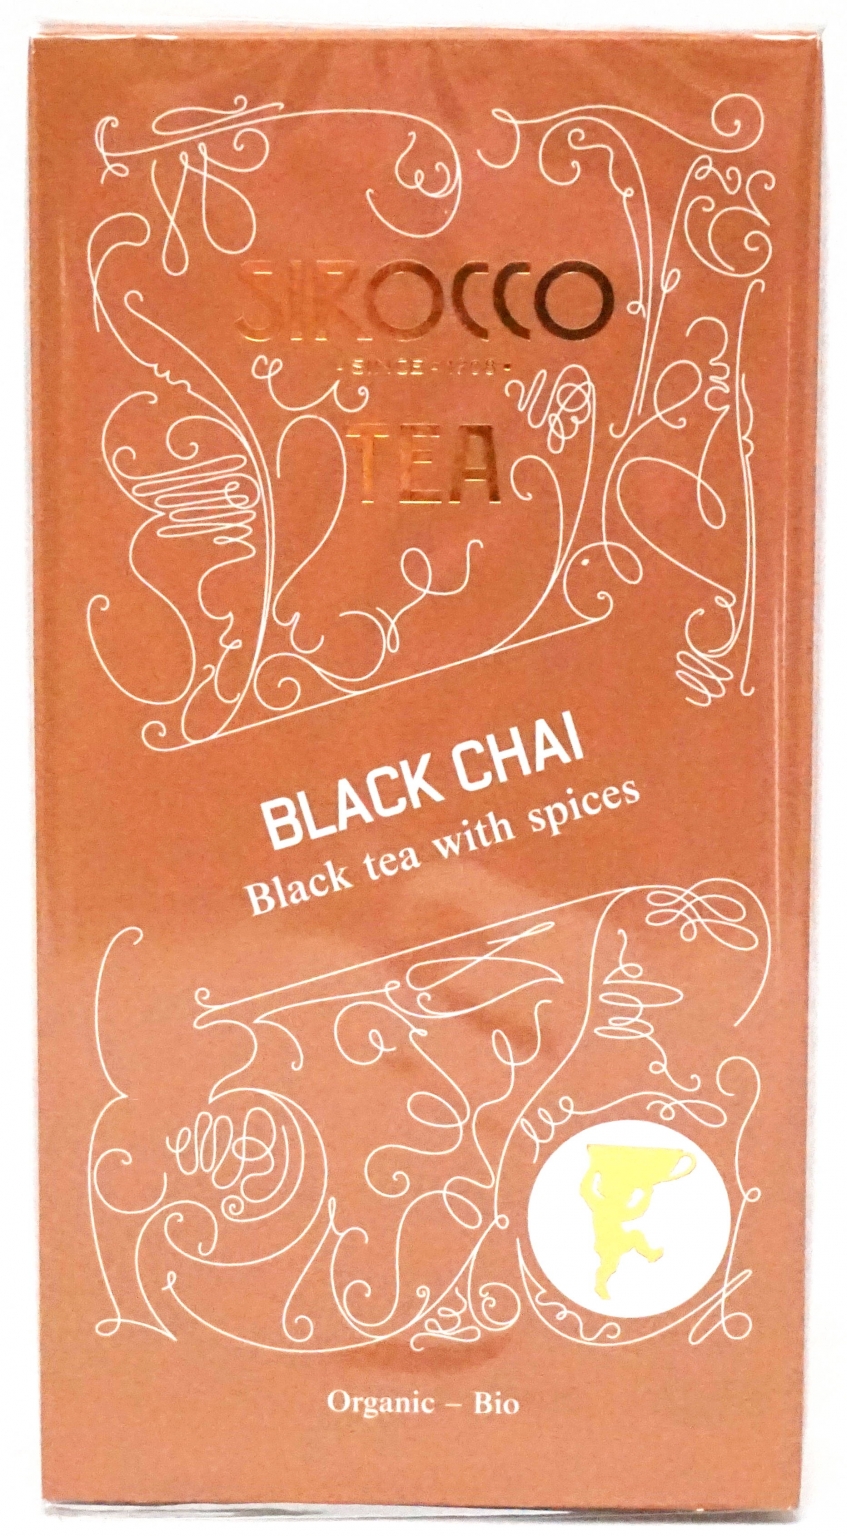 Black Chai Bio Tea with spices